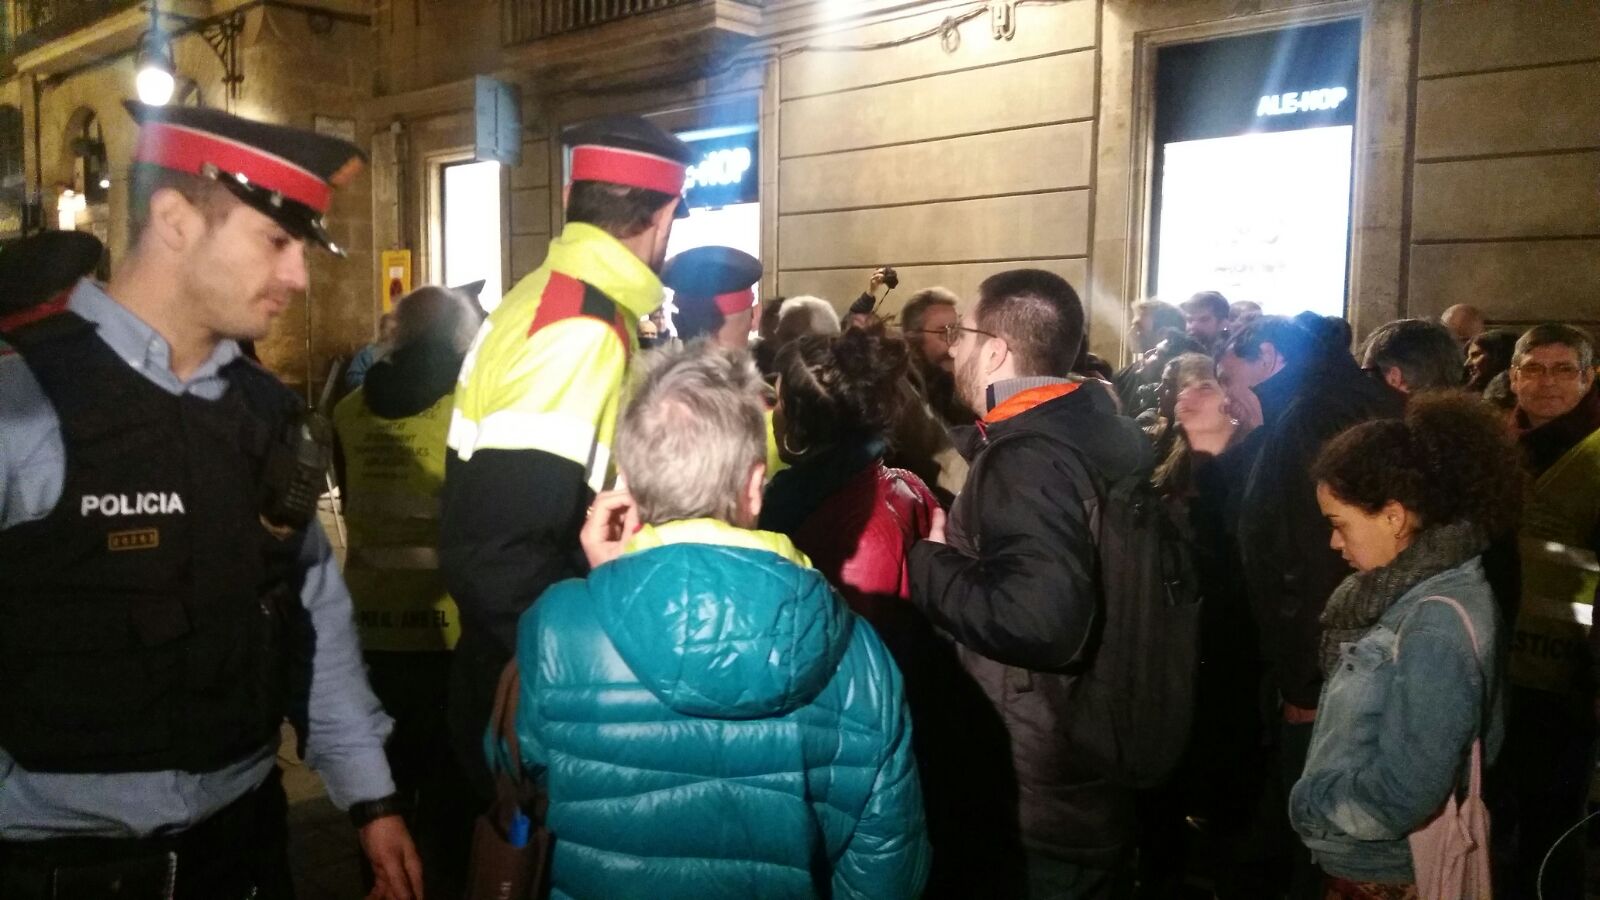 Una treintena de personas reciben a Felipe VI con gritos de "ladrones"